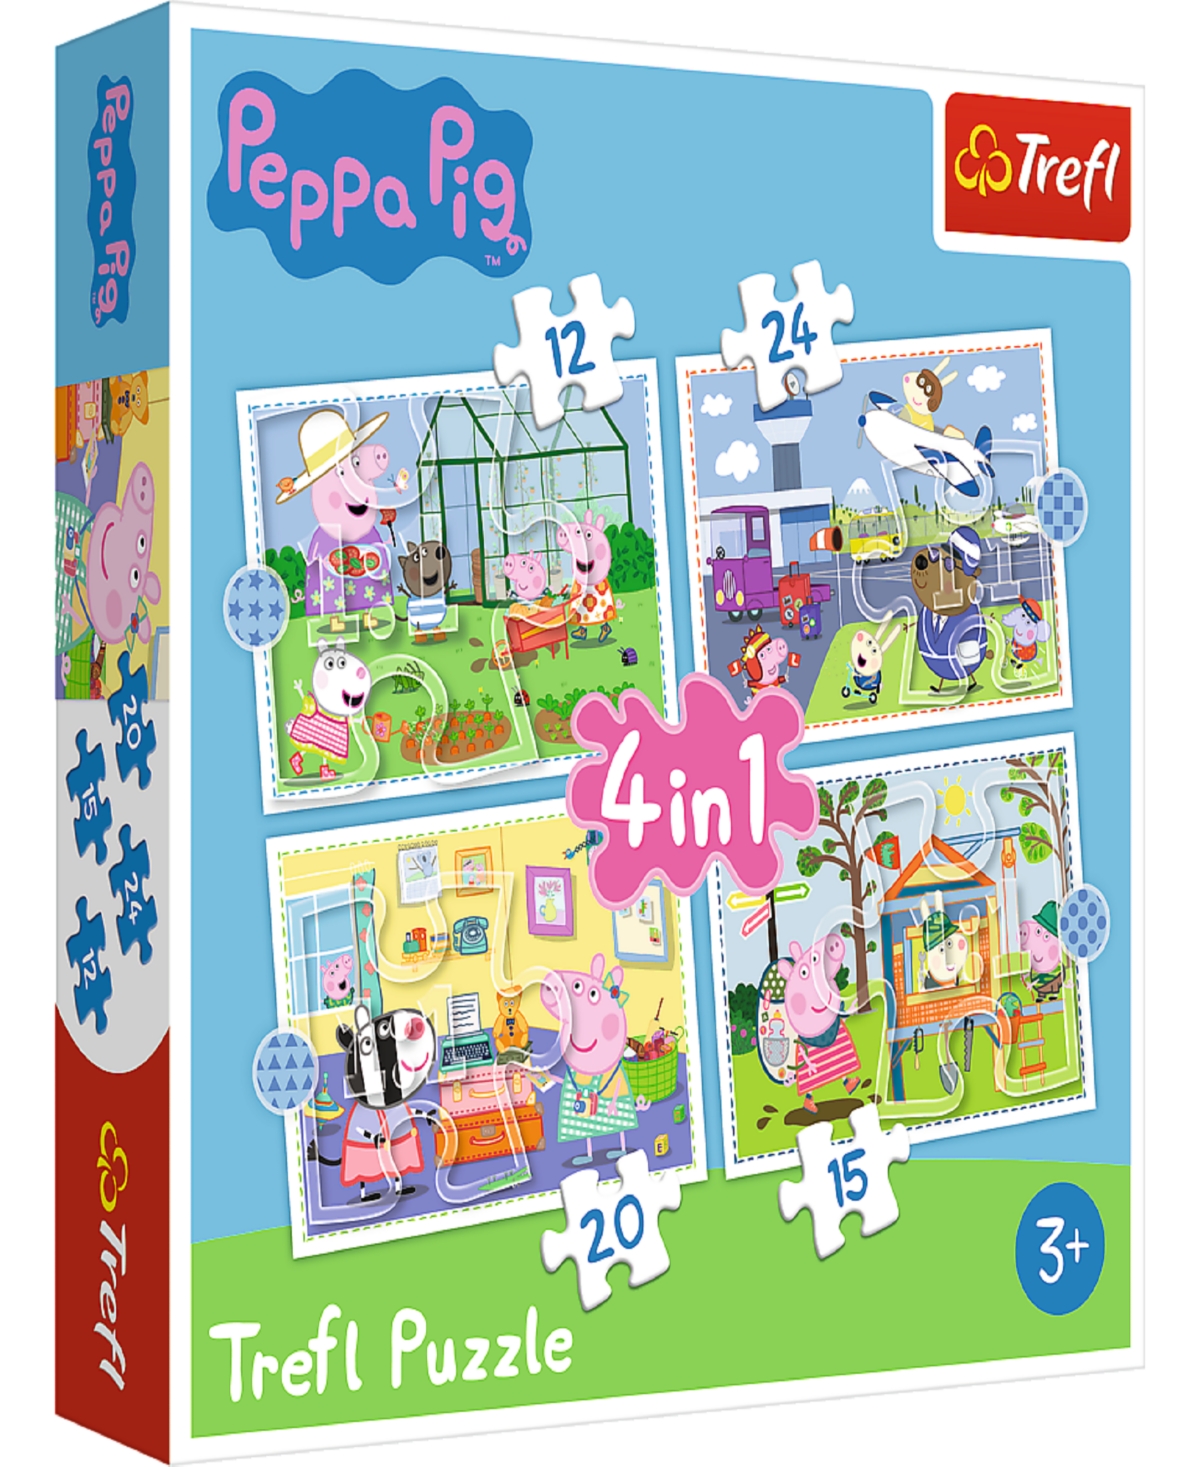 Trefl Kids' Peppa Pig 4 In 1 12, 20, 24, 15 Piece Puzzle In Multi